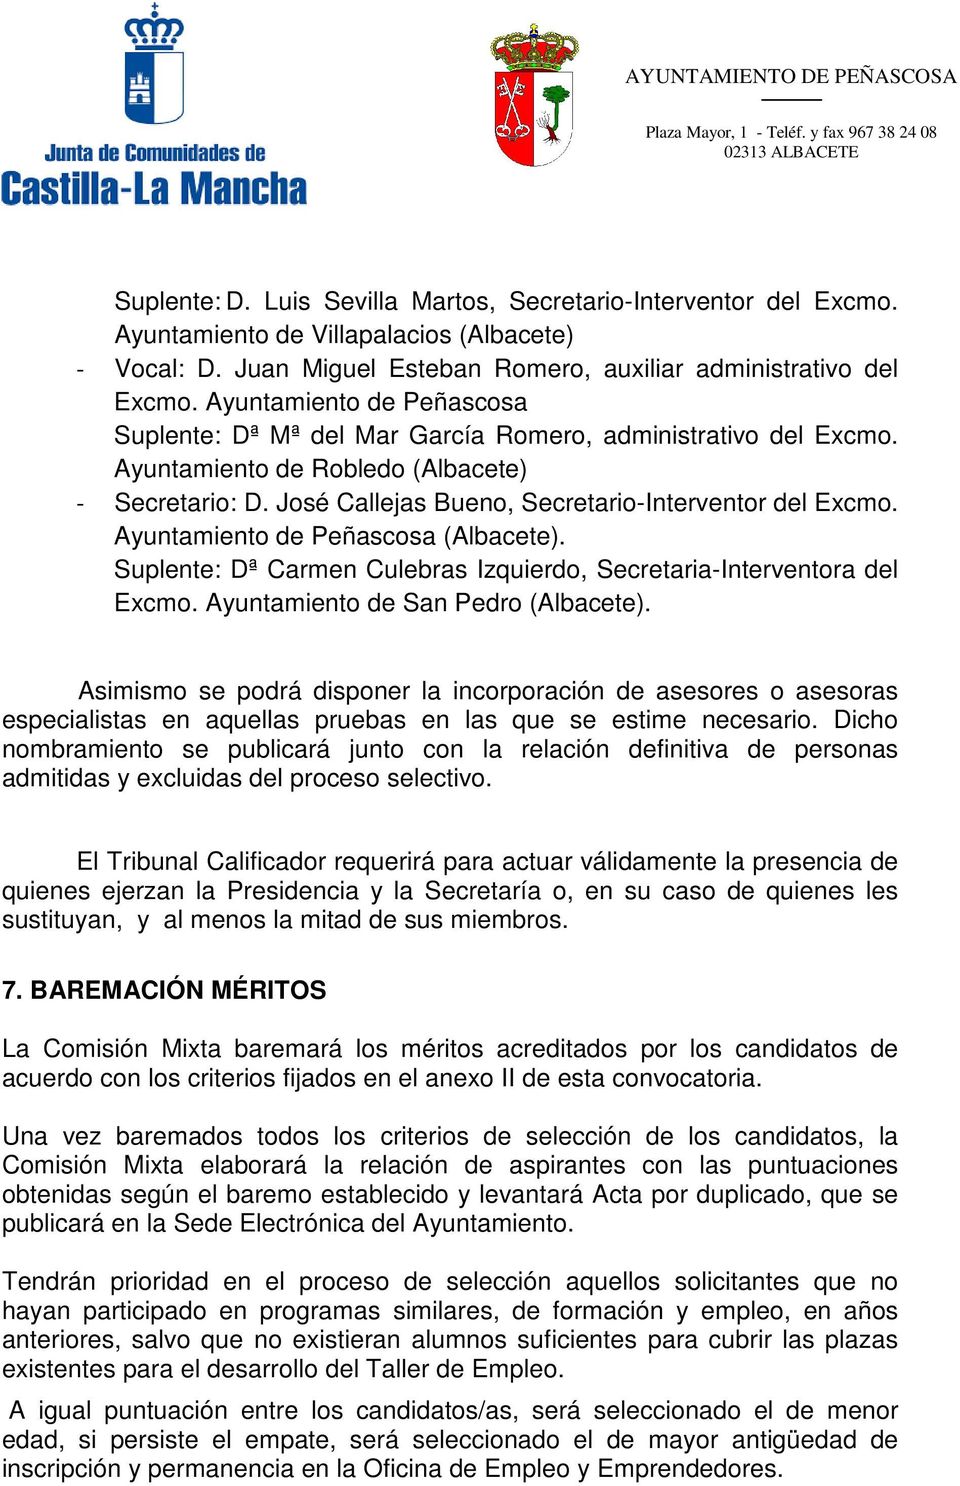 Ayuntamiento de Peñascosa (Albacete). Suplente: Dª Carmen Culebras Izquierdo, Secretaria-Interventora del Excmo. Ayuntamiento de San Pedro (Albacete).